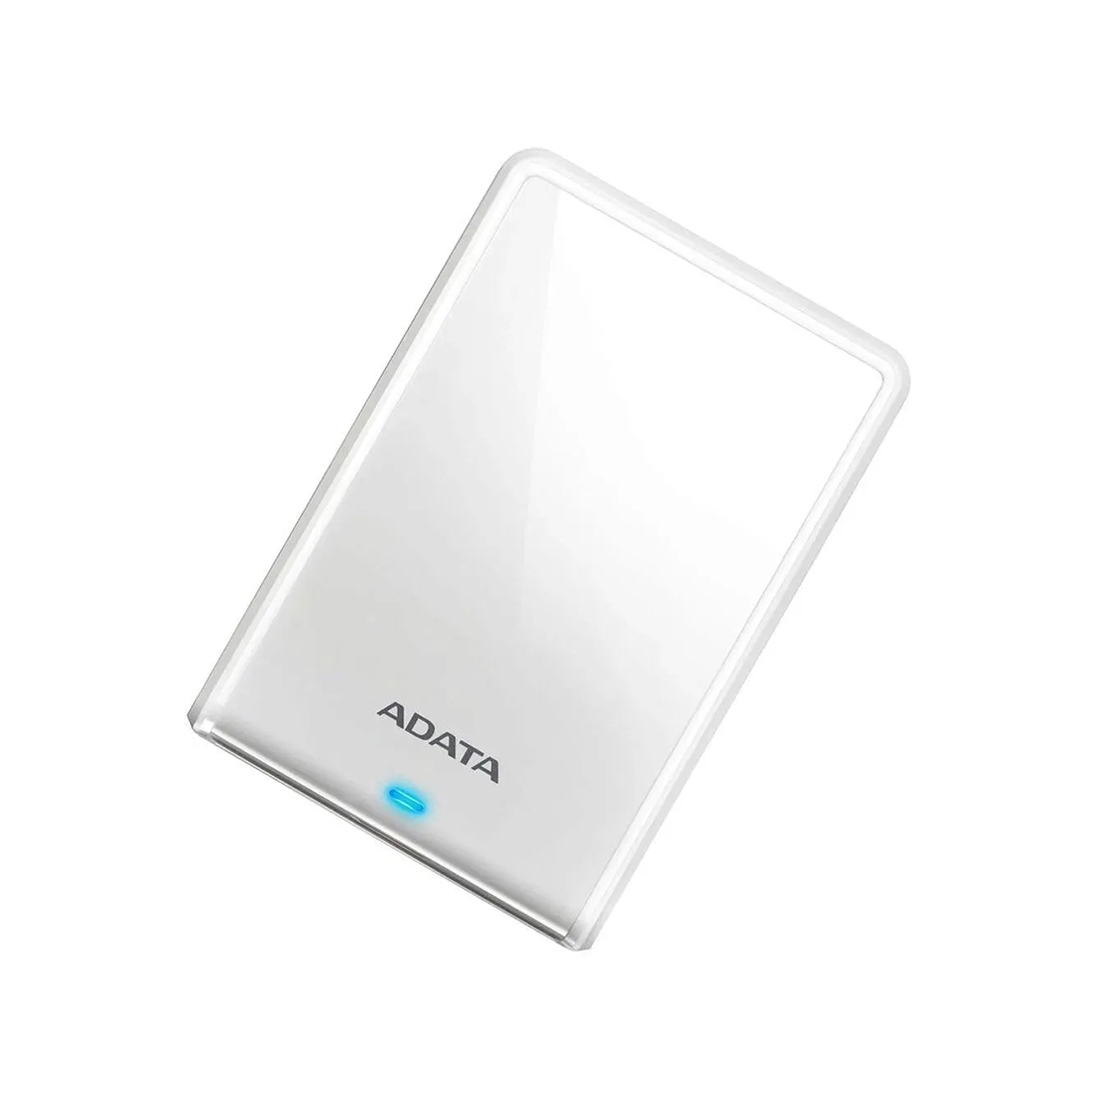 Внешний жёсткий диск ADATA 1TB 2.5" HV620 Slim Белый